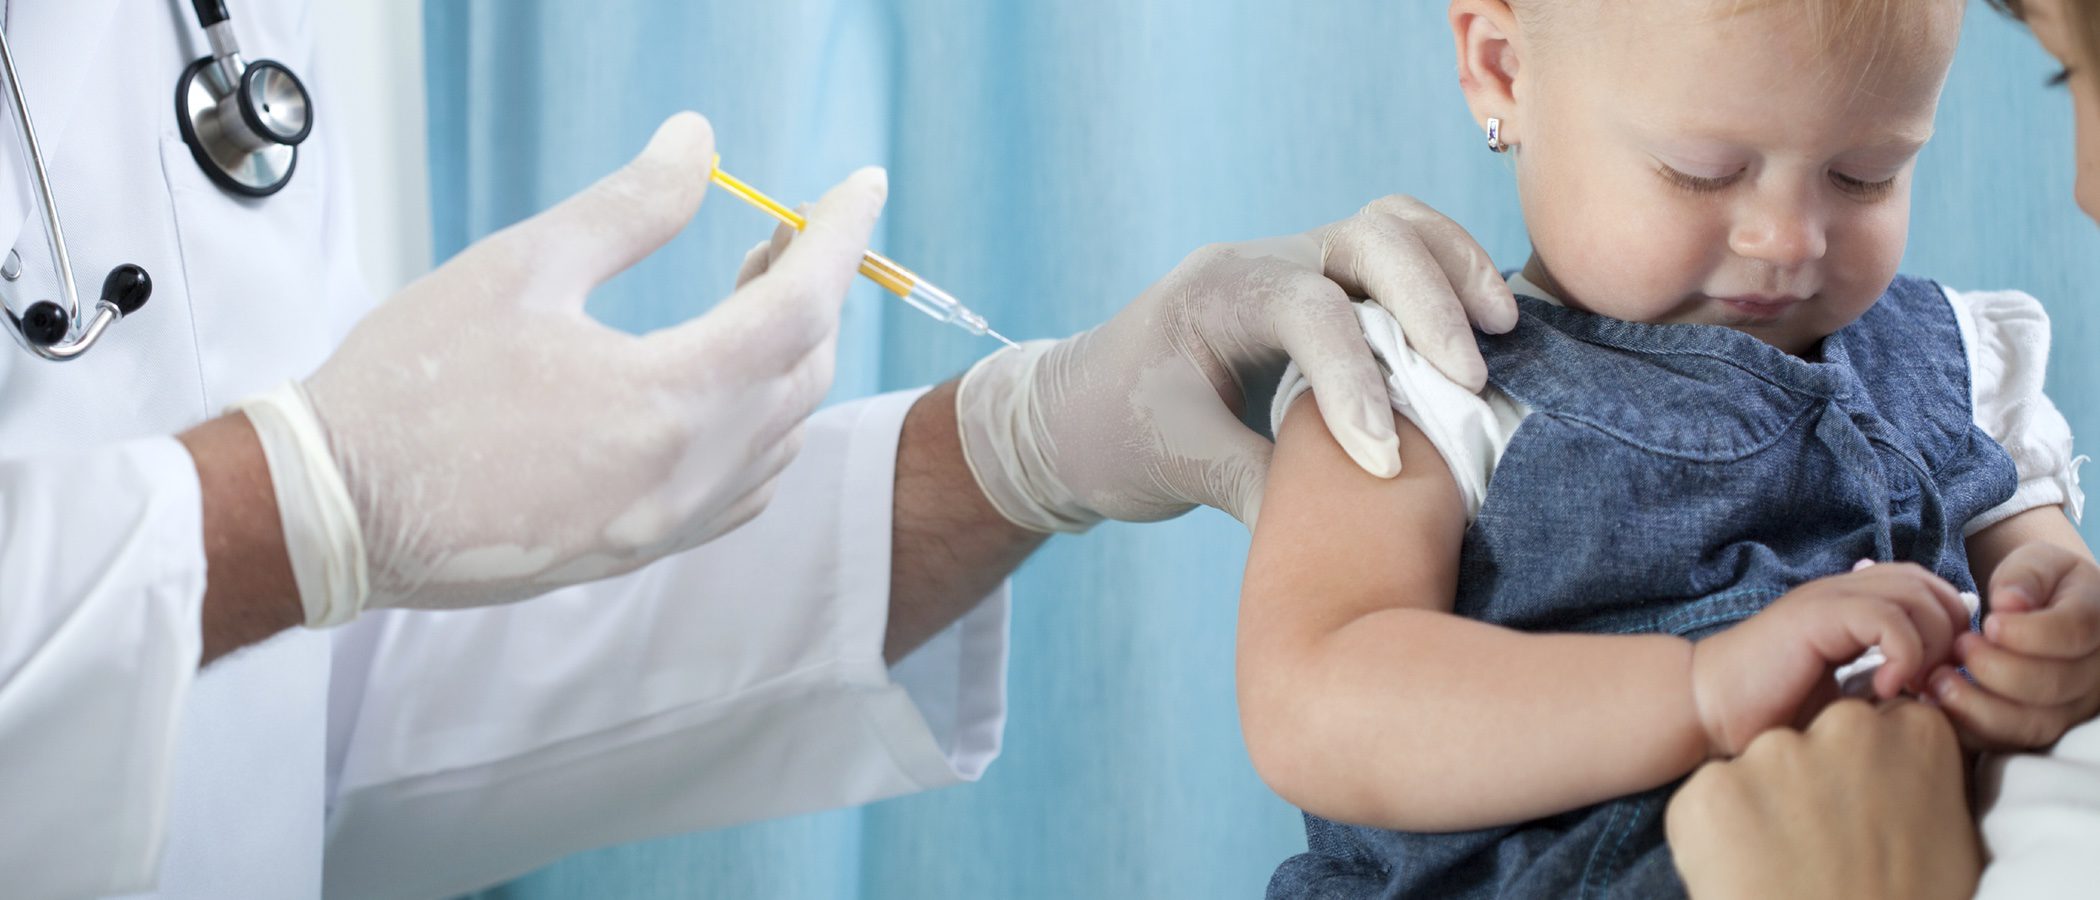 El debate de las vacunas infantiles